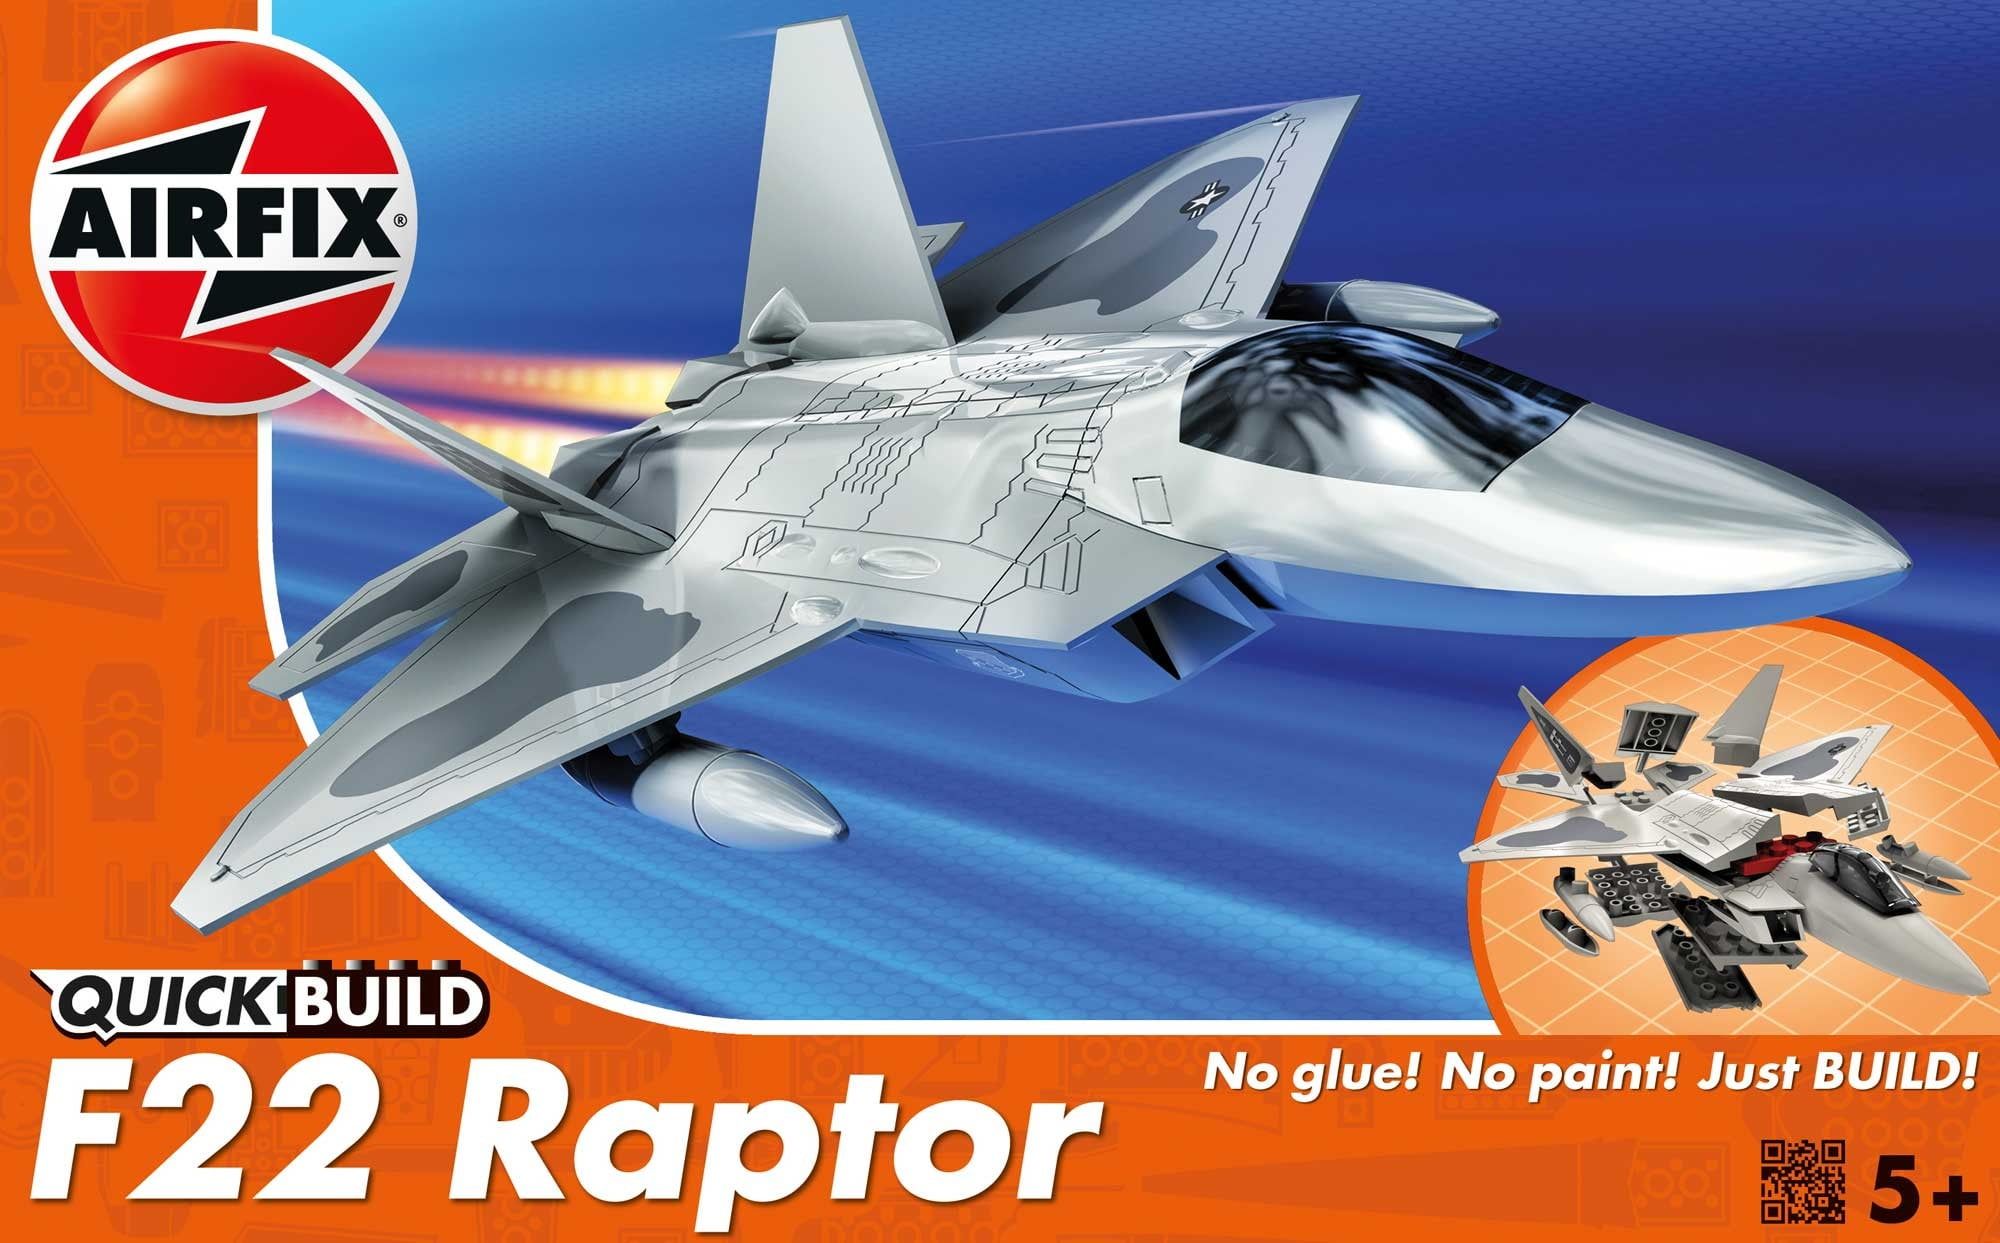 Airfix QUICK BUILD F22 Raptor